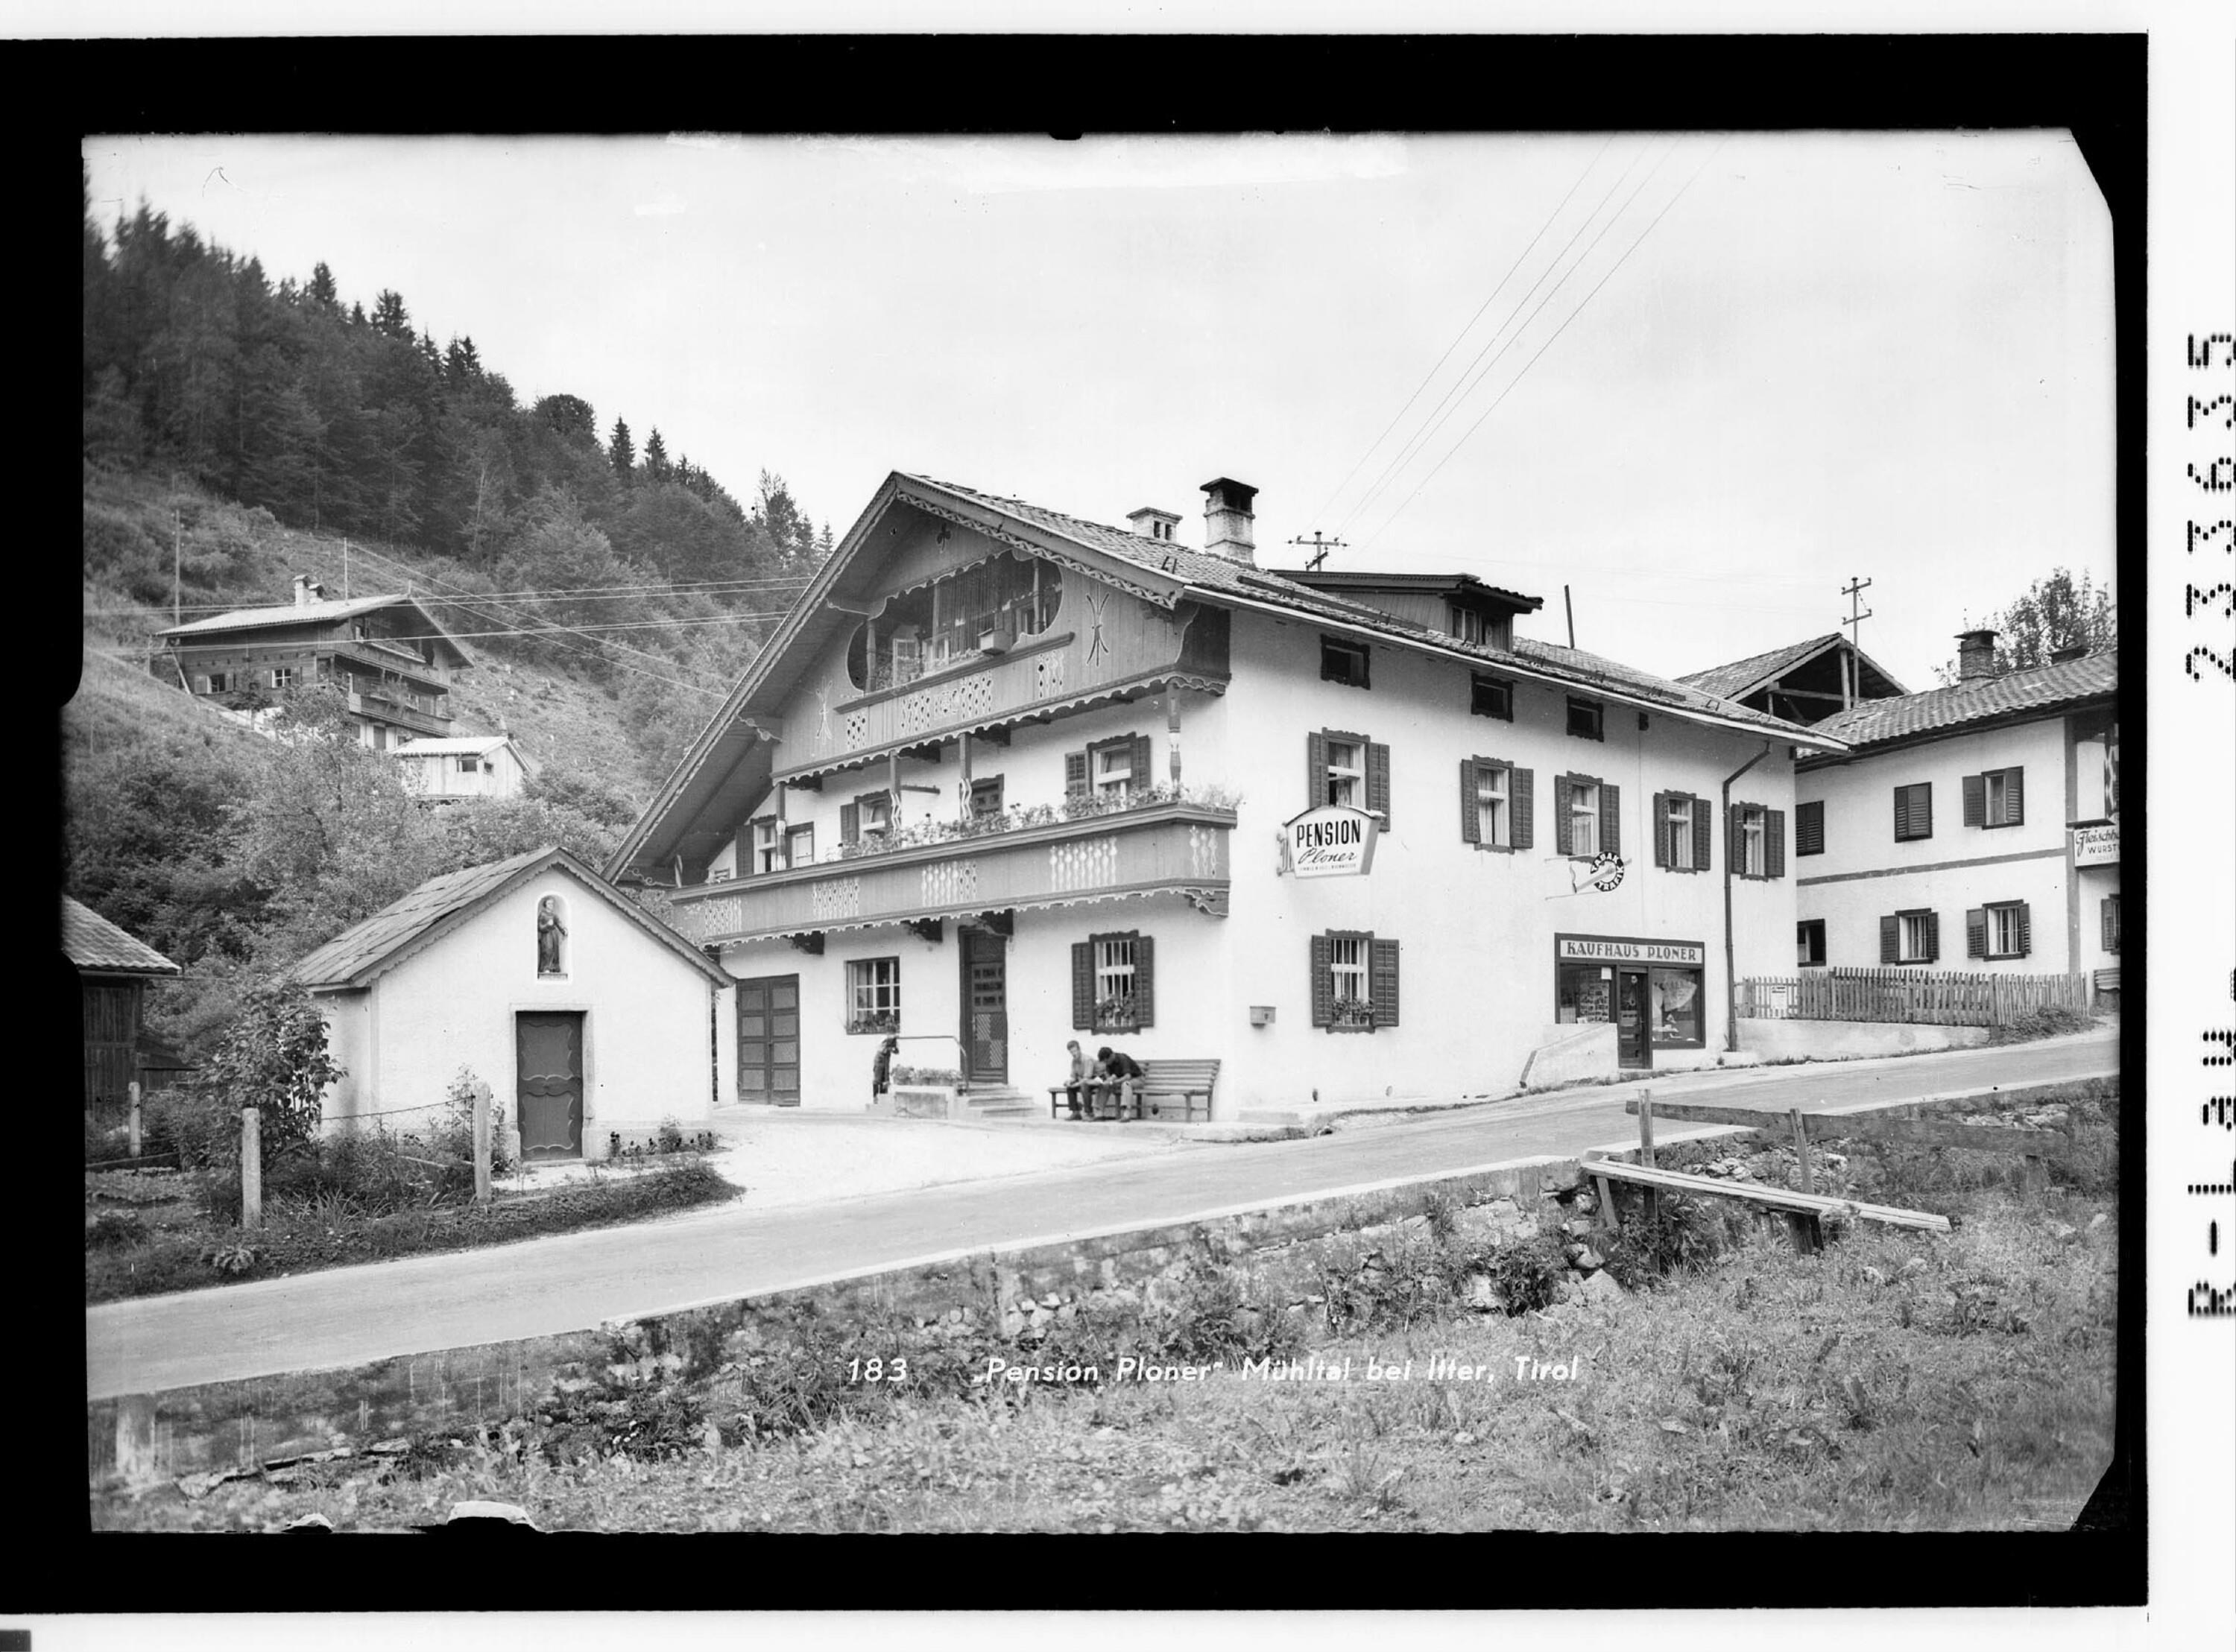 Pension Ploner in Mühltal bei Itter, Tirol></div>


    <hr>
    <div class=